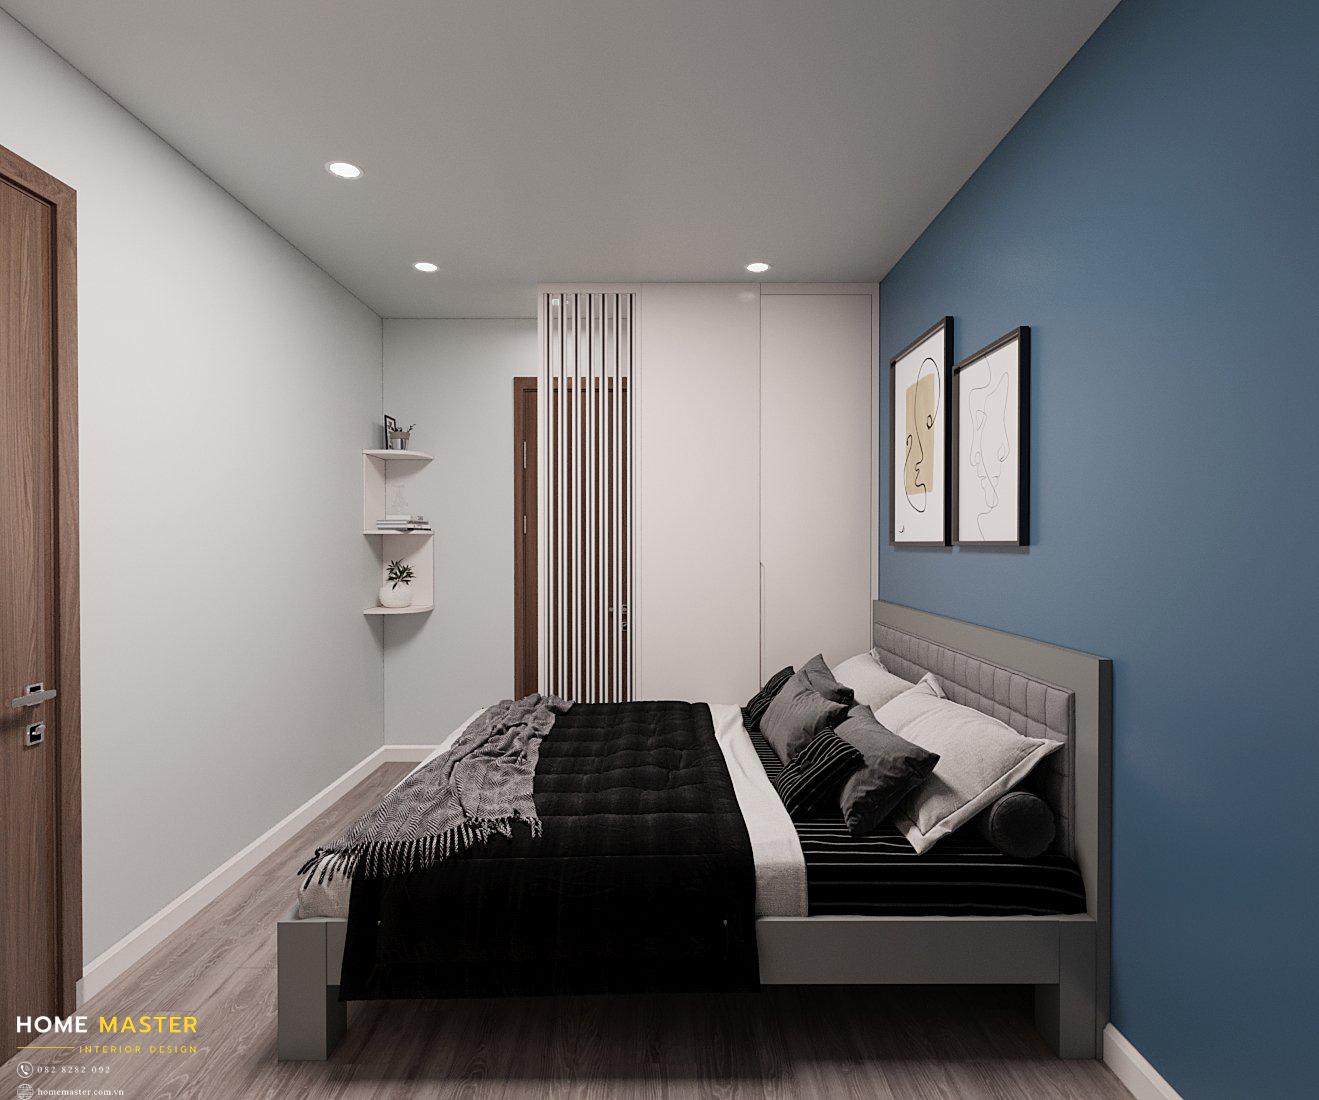 Thiết kế phòng ngủ hợp lí giúp tiết kiệm diện tích hơn cho căn hộ.